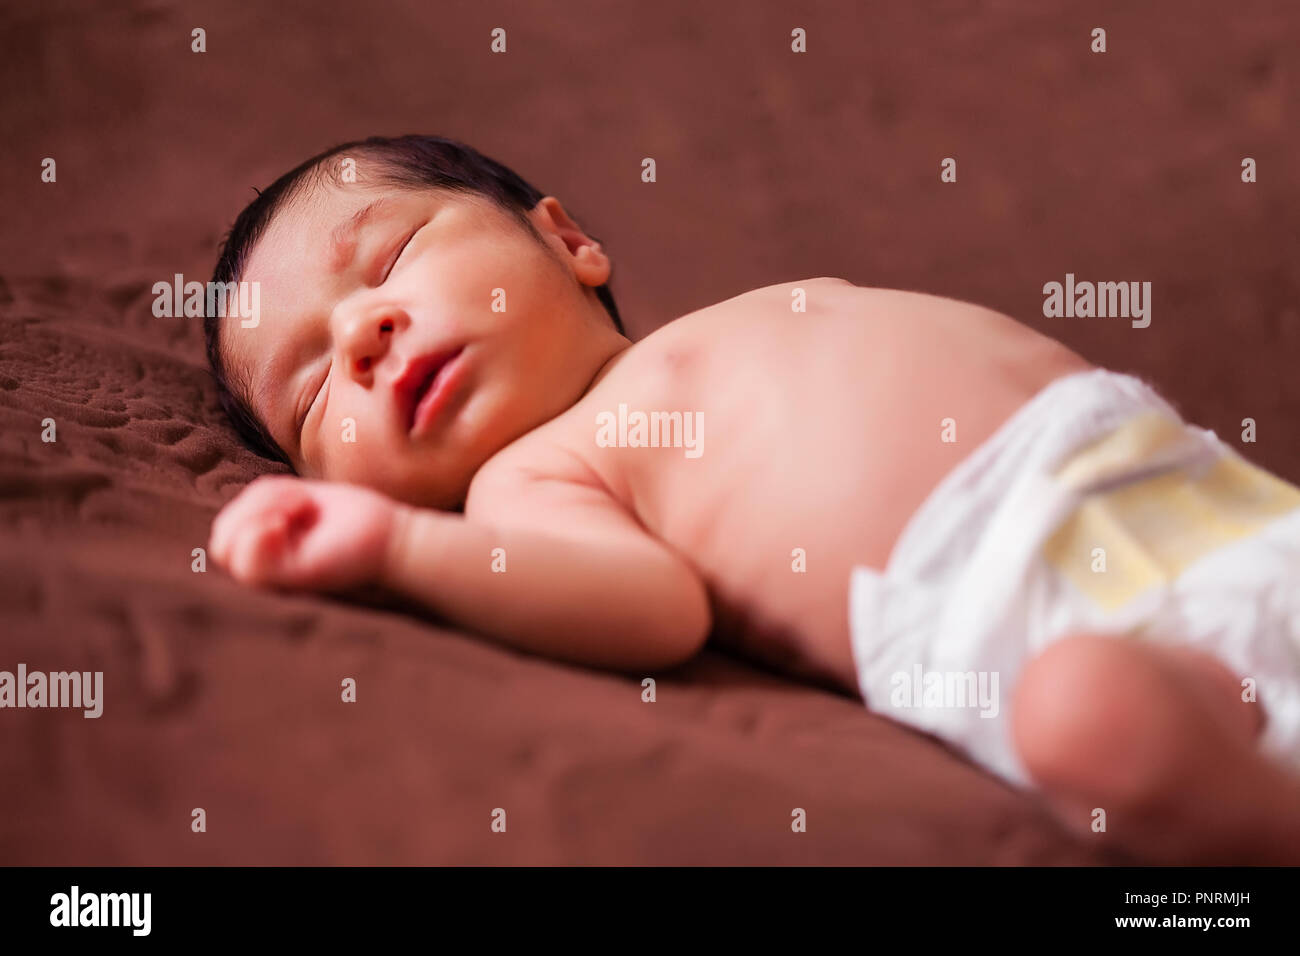 Un mignon deux semaines Naissance bebe Fille sans vêtements, nu ou nue, à l'aide d'une couche ou nappy, dormir paisiblement dans le lit Banque D'Images